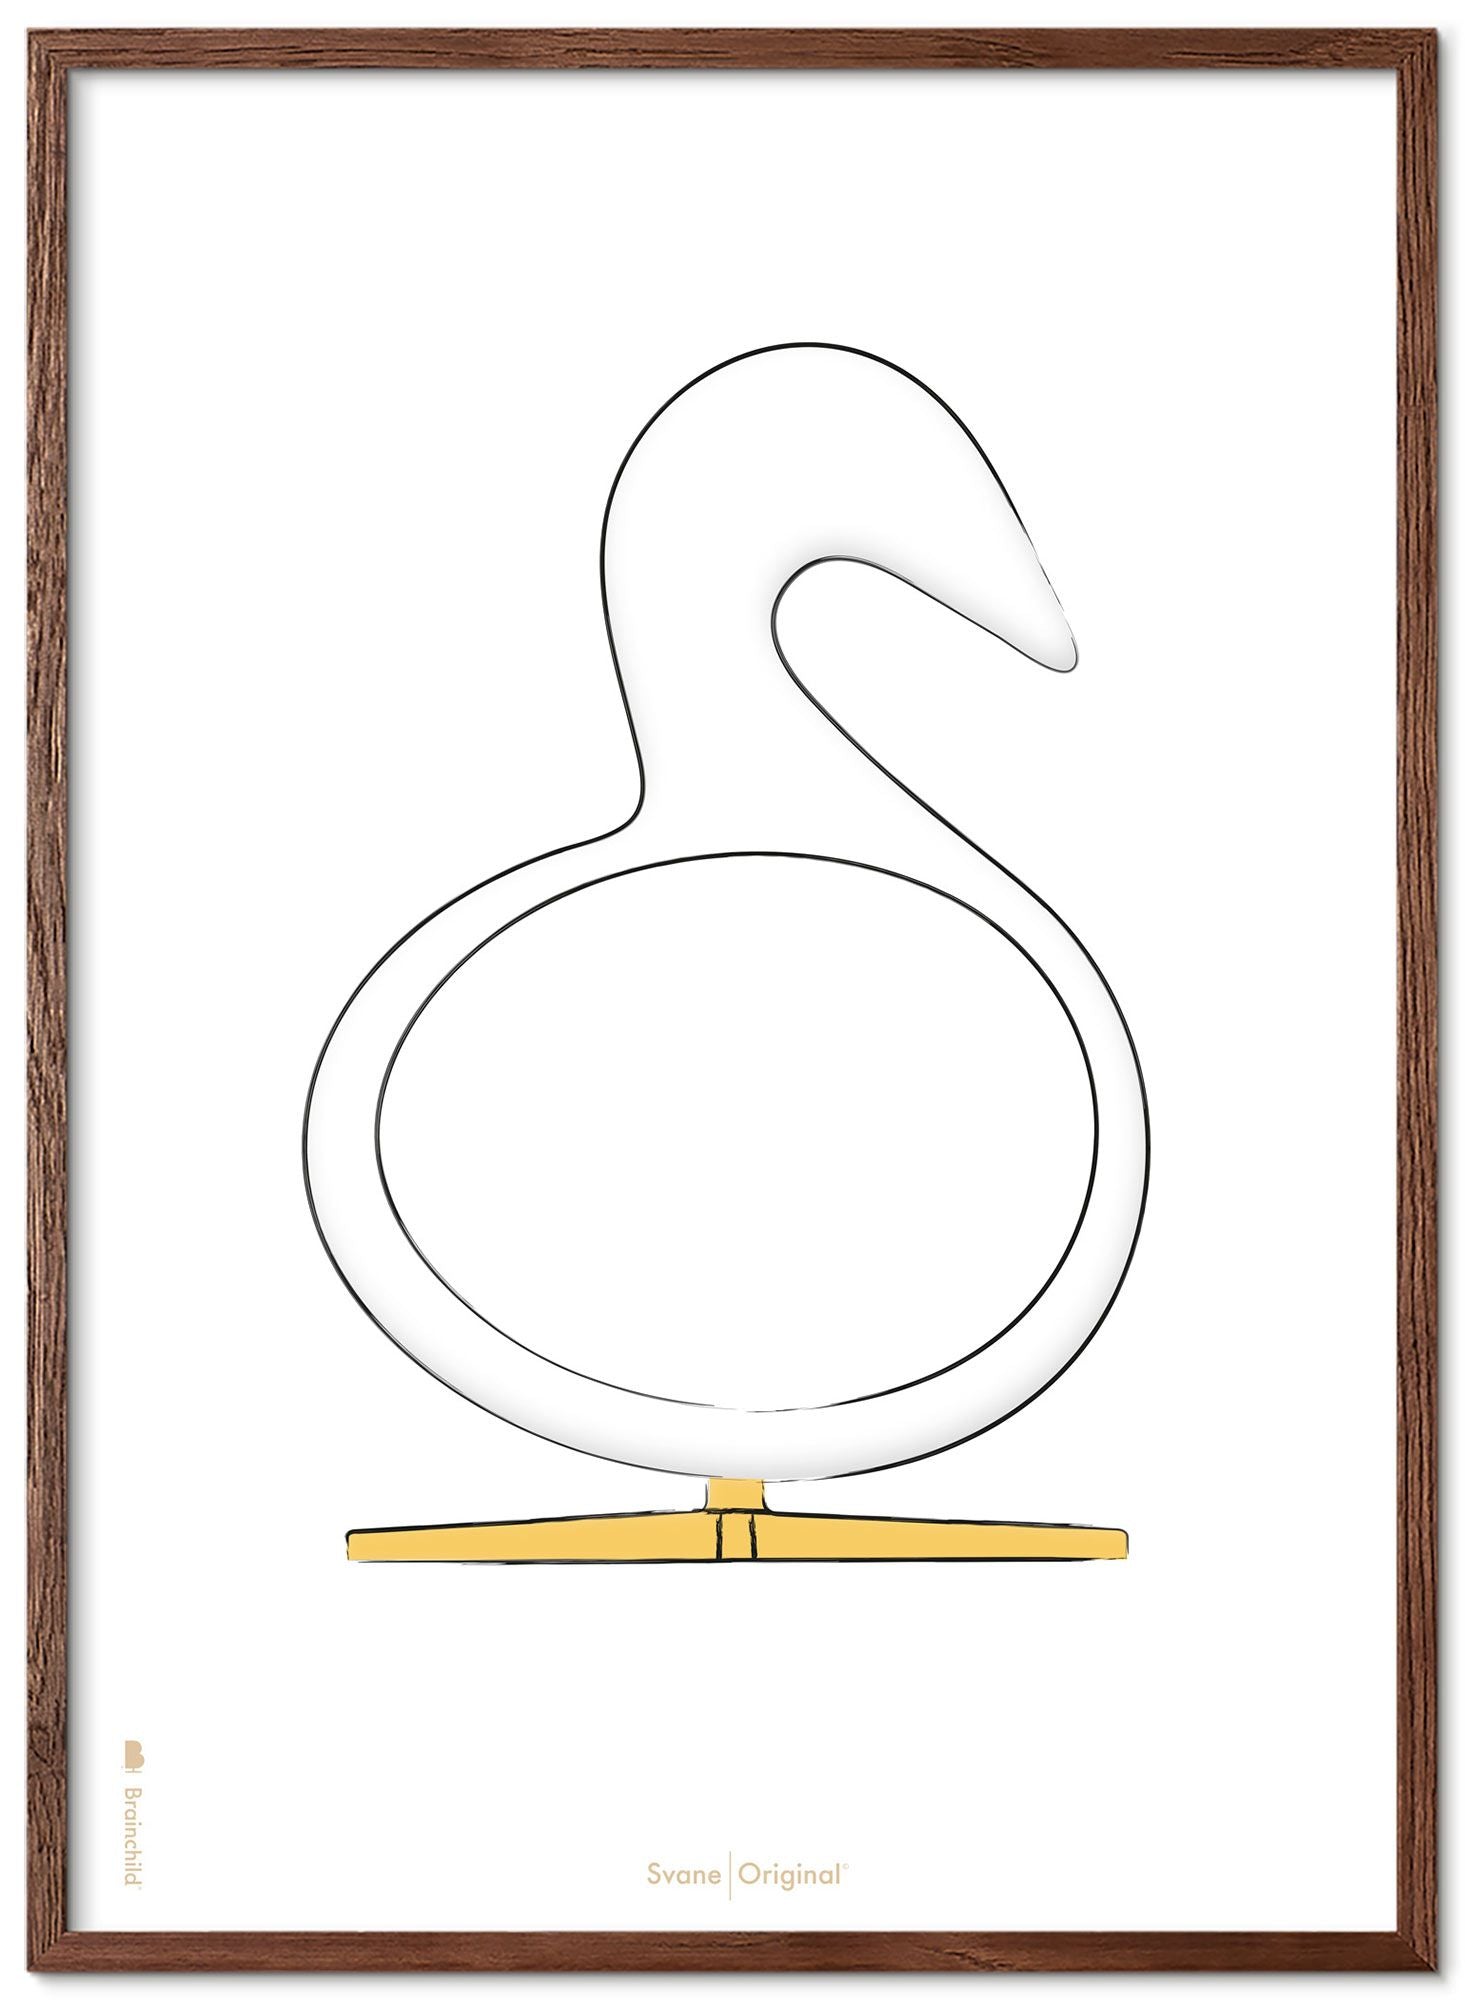 Brainchild Swan Design Sketch Poster Frame Made Of Dark Wood 30x40 Cm, White Background